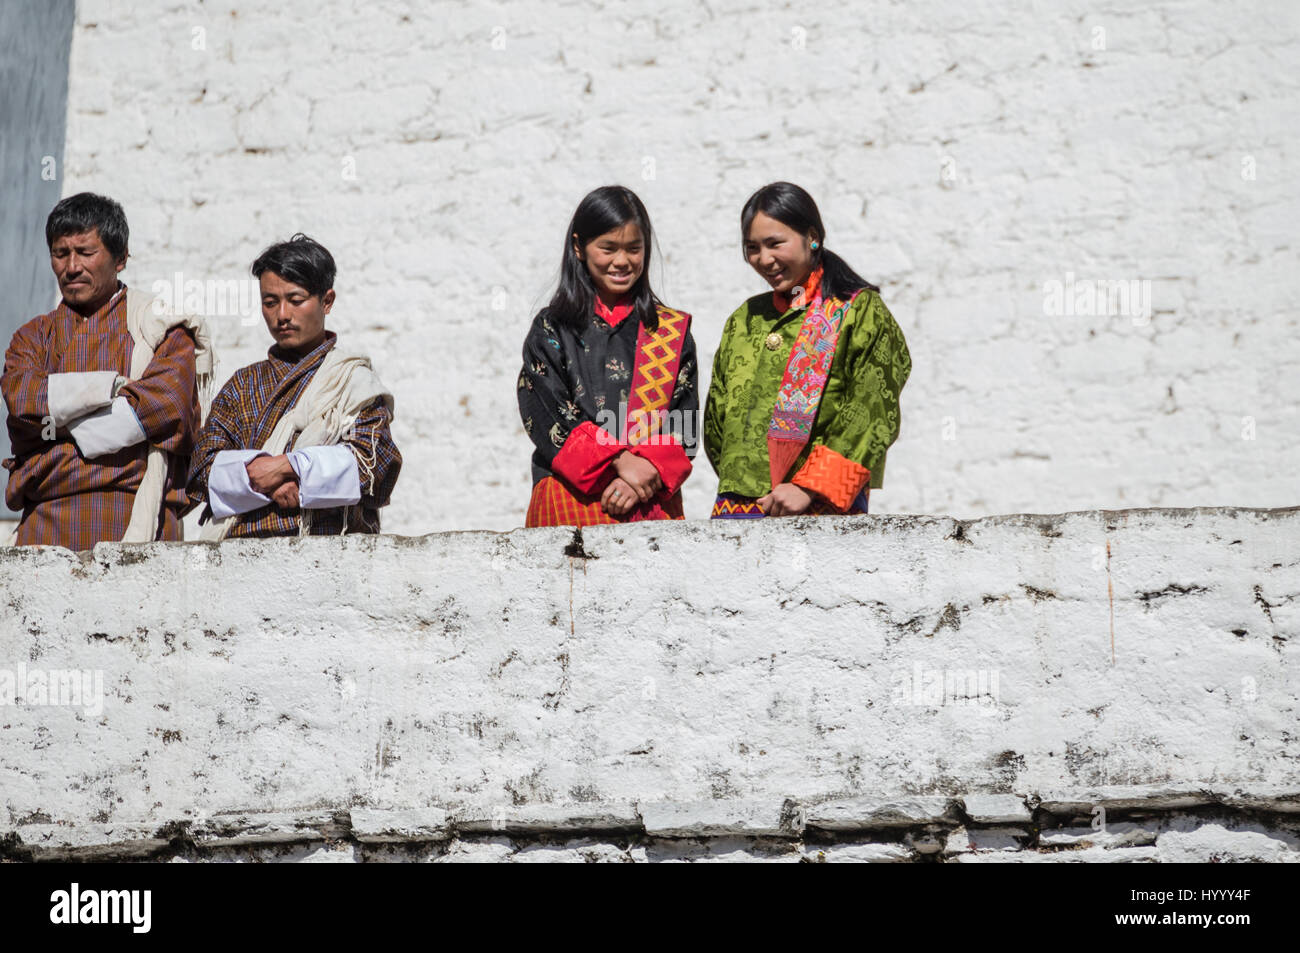 Men in Gho and Women in Kira watching a Tsechu (Bhutan) Stock Photo